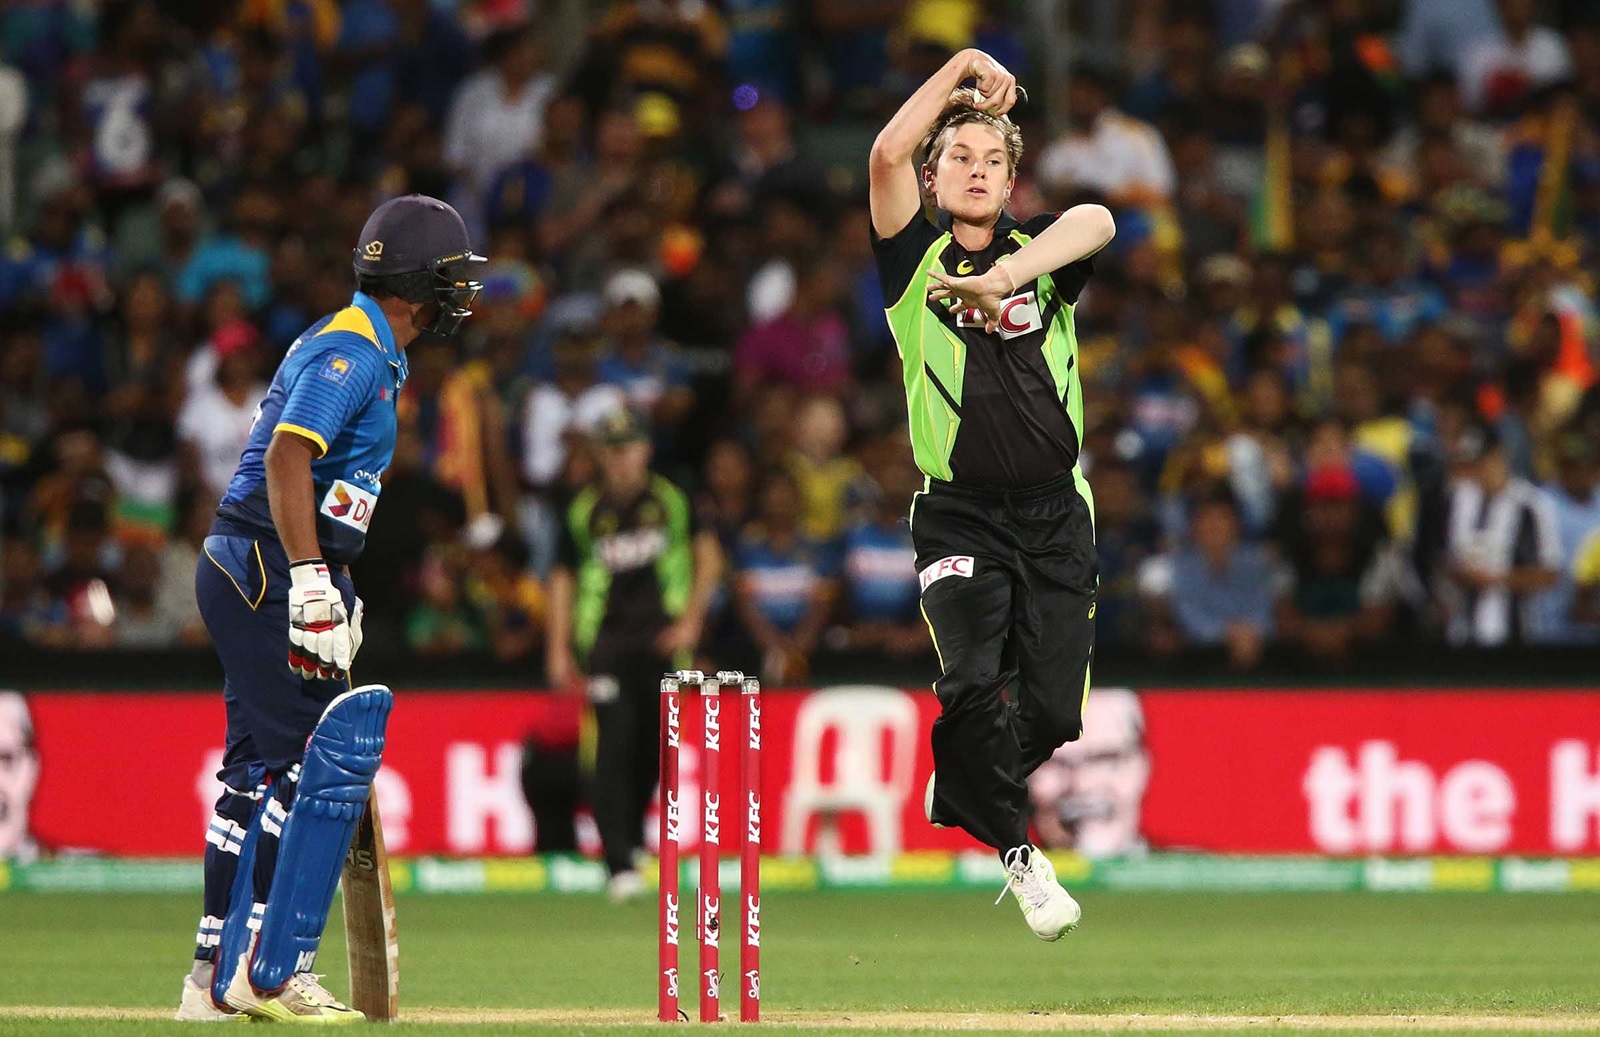 ICC T20 WC FINAL: ऑस्ट्रेलियाई स्पिनर के फैन बने सचिन तेंदुलकर, फाइनल जीतने के लिए कीवियों को दी ये सलाह 4